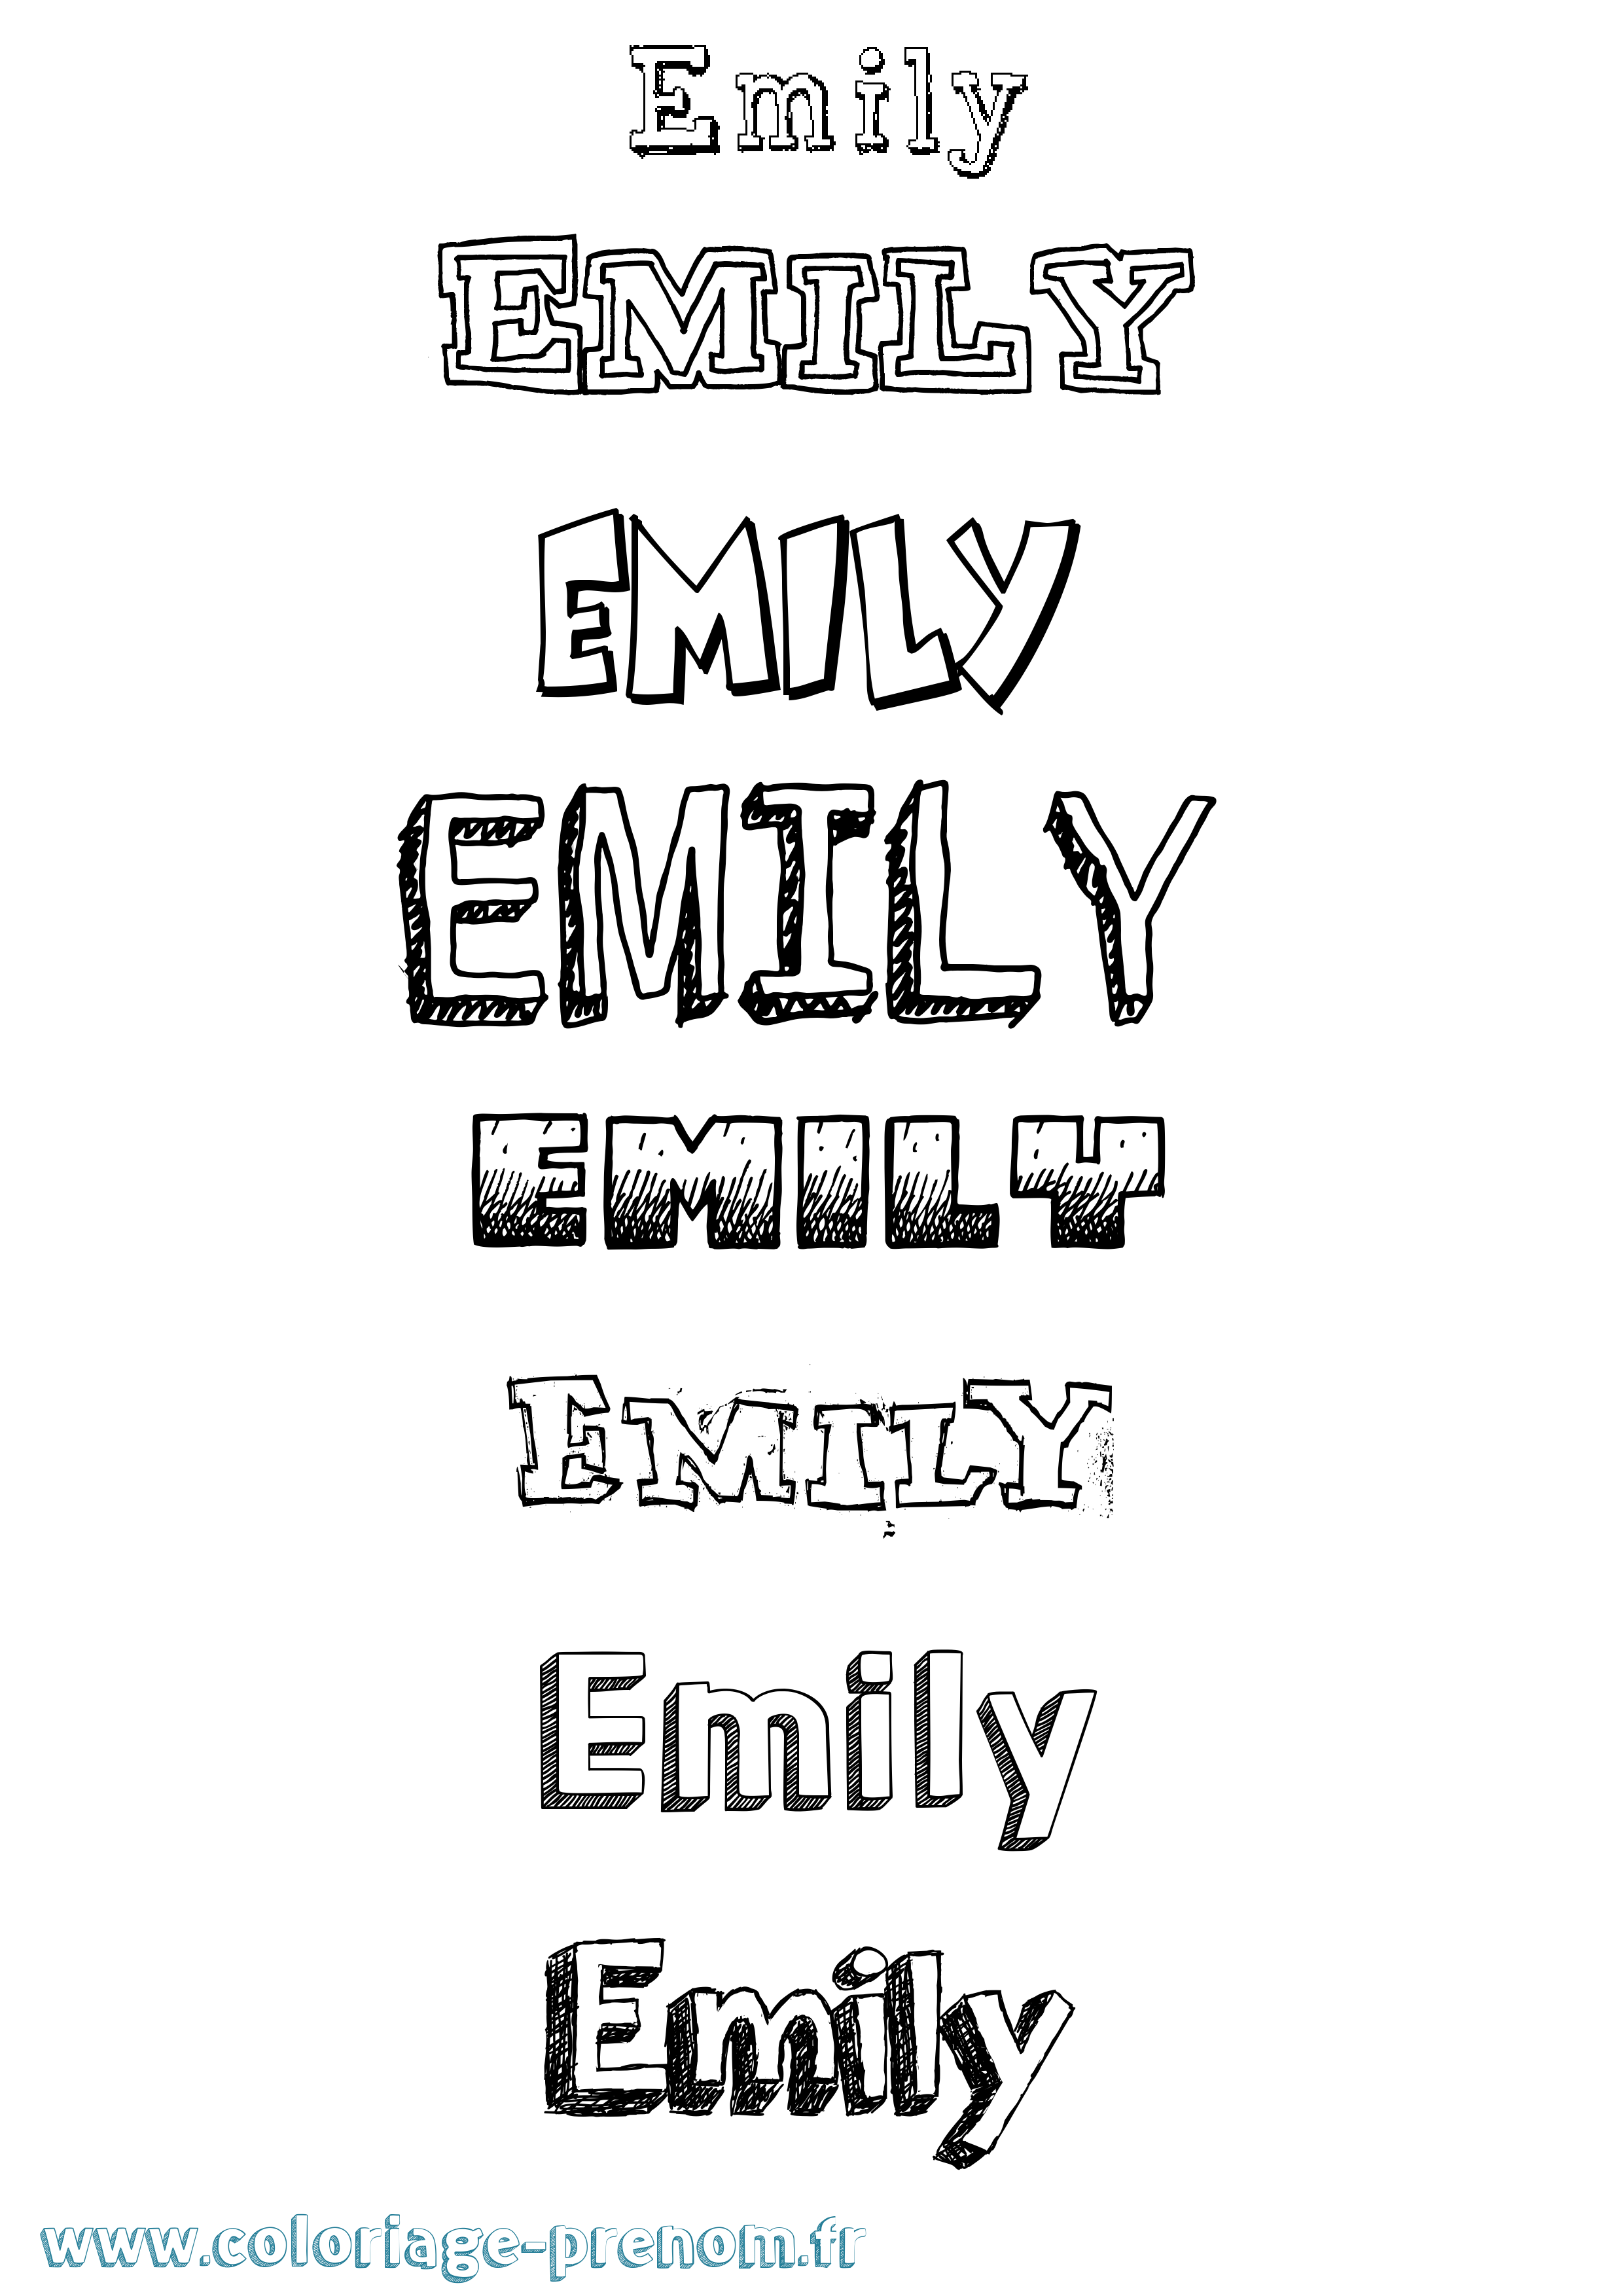 Coloriage prénom Emily